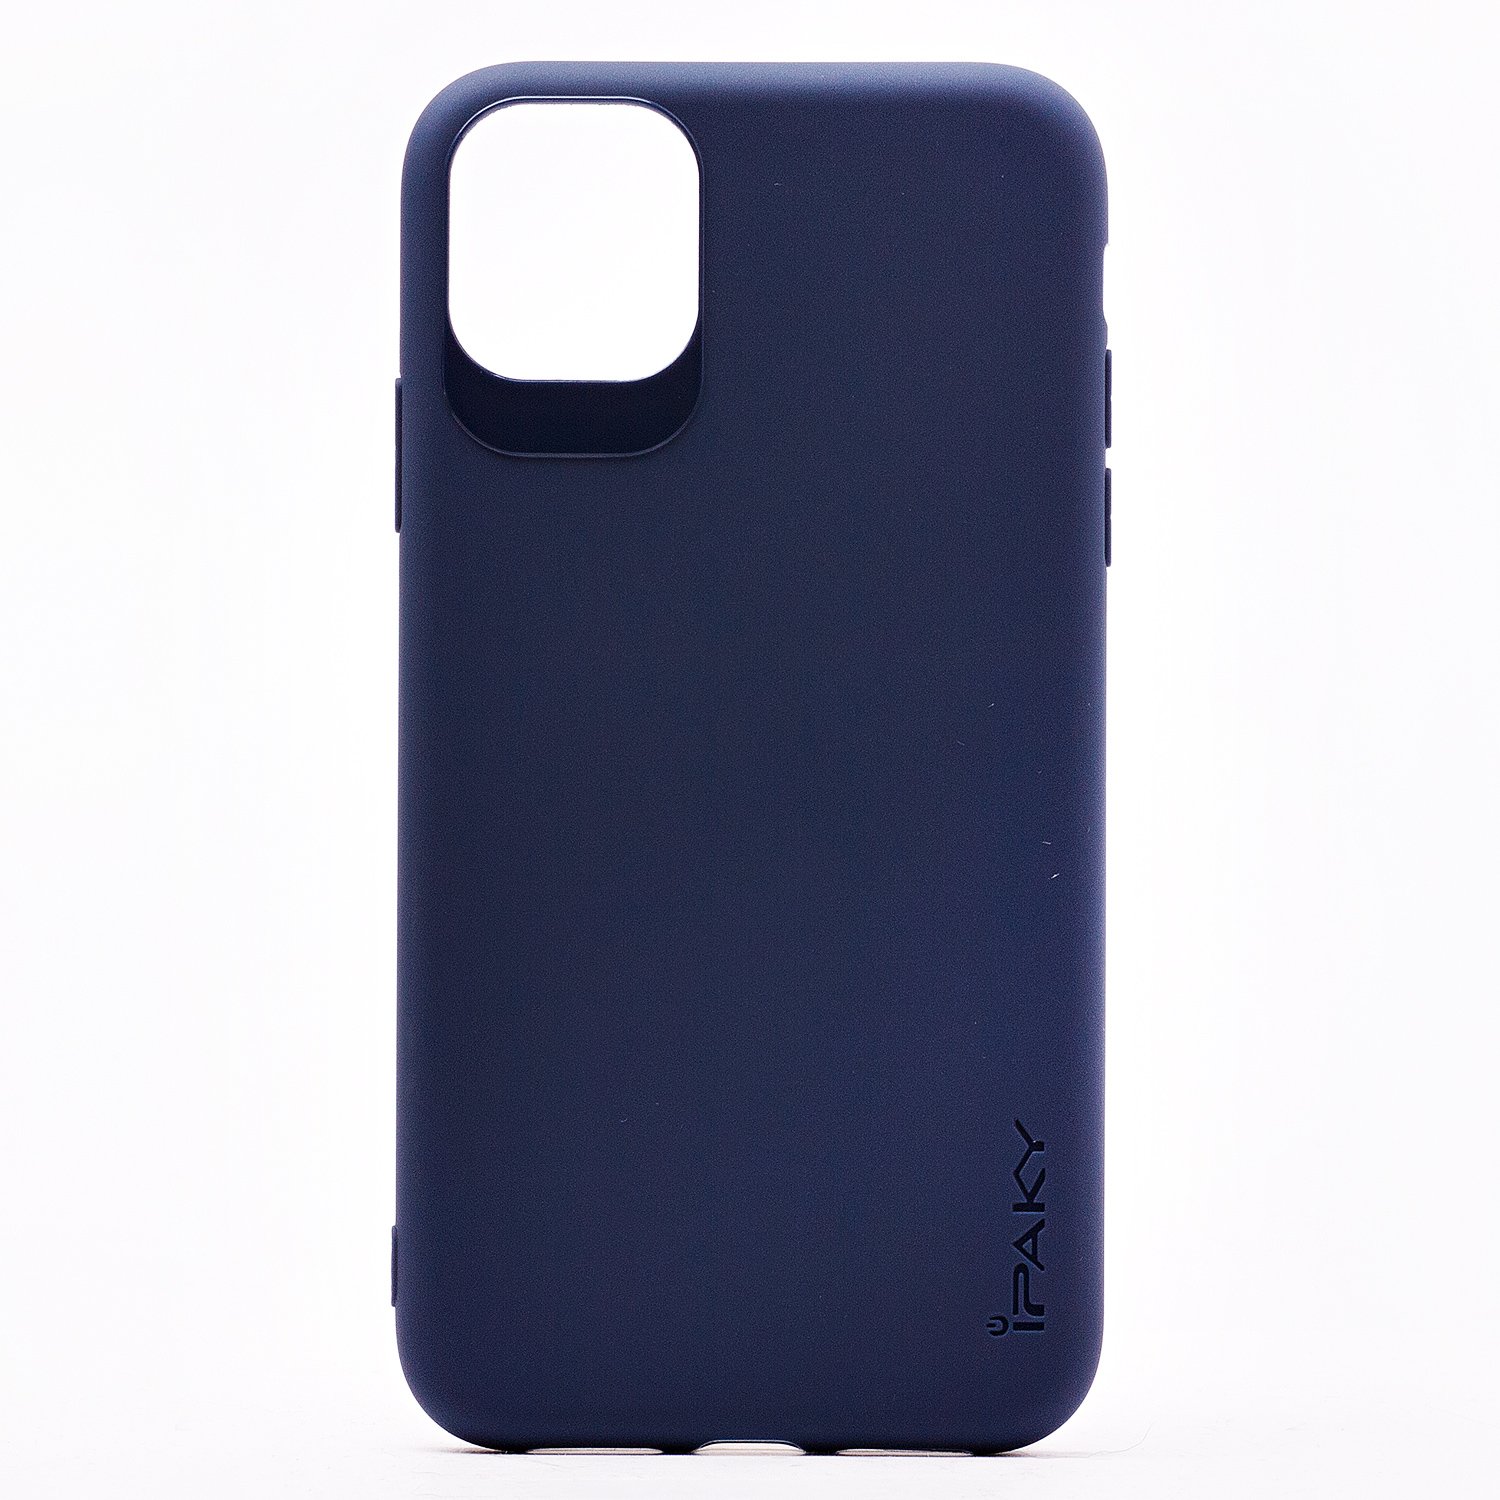 Чехол-накладка iPAKY SC178 для смартфона Apple iPhone 11 Pro, силикон, синий (113976)